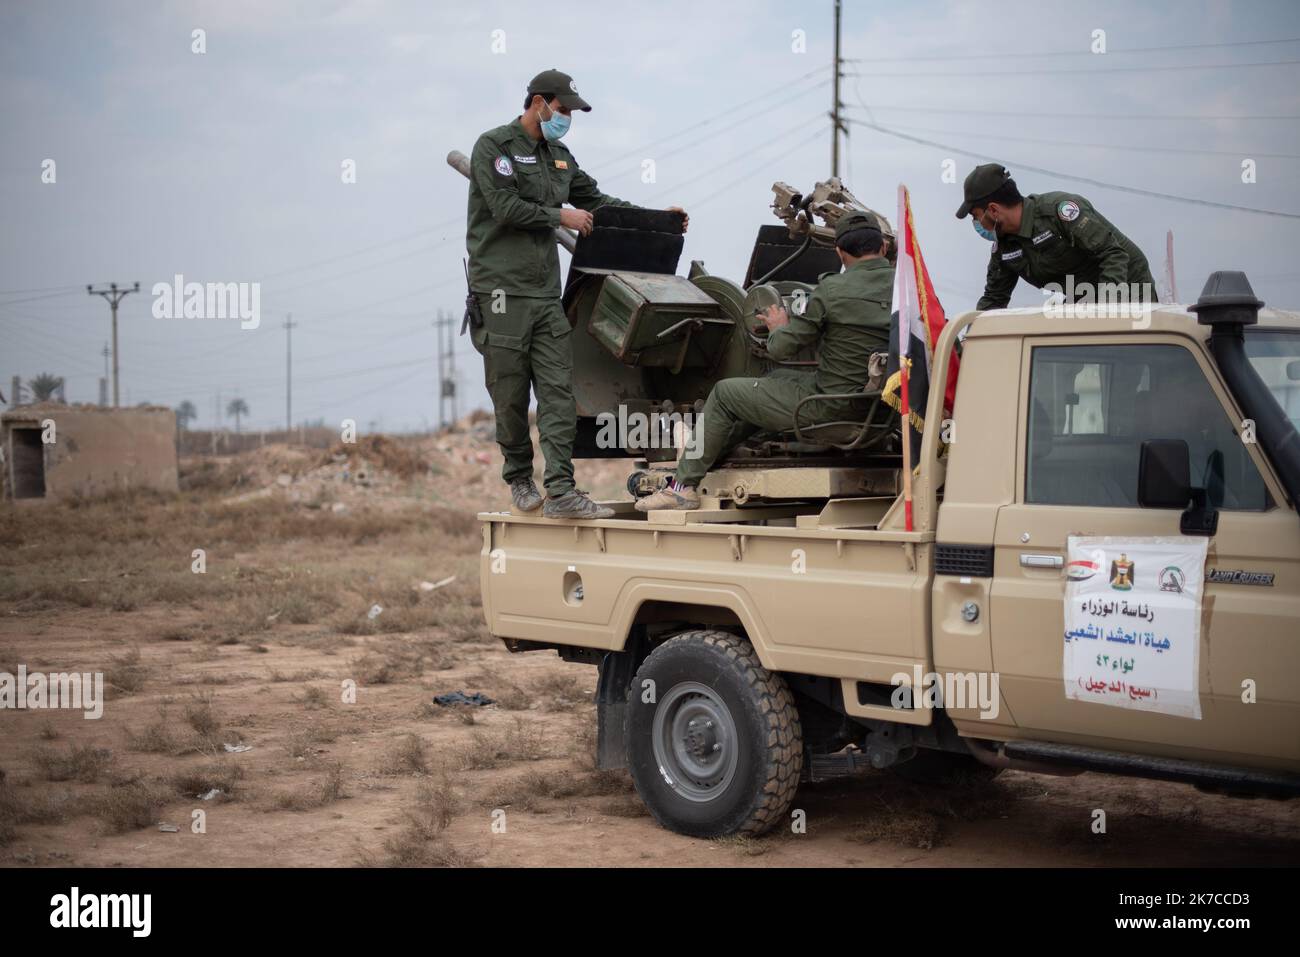 ©Chloe Sharrock / Le Pictorium/MAXPPP - Chloe Sharrock / Le Pictorium - 23/12/2020 - Irak / Samara - A une semaine de la commemoration de l'assassinat des leaders Iraniens Qassem Soleimani et Al-Mohandis, un entrainement est organise a` la base militaire de la Brigade 43 des Hachd al-Chaabi. La Brigade 43 est composee de paramilitaires du mouvement Asa'ib Ahl al-Haq. / 23/12/2020 - Iraq / Samara - A week before the commemoration of the killing of the two Iranian leaders Qassem Soleimani and Abu Mahdi al-Muhandis, a military training is organized in the military camp of the 43rd Brigade of the  Stock Photo